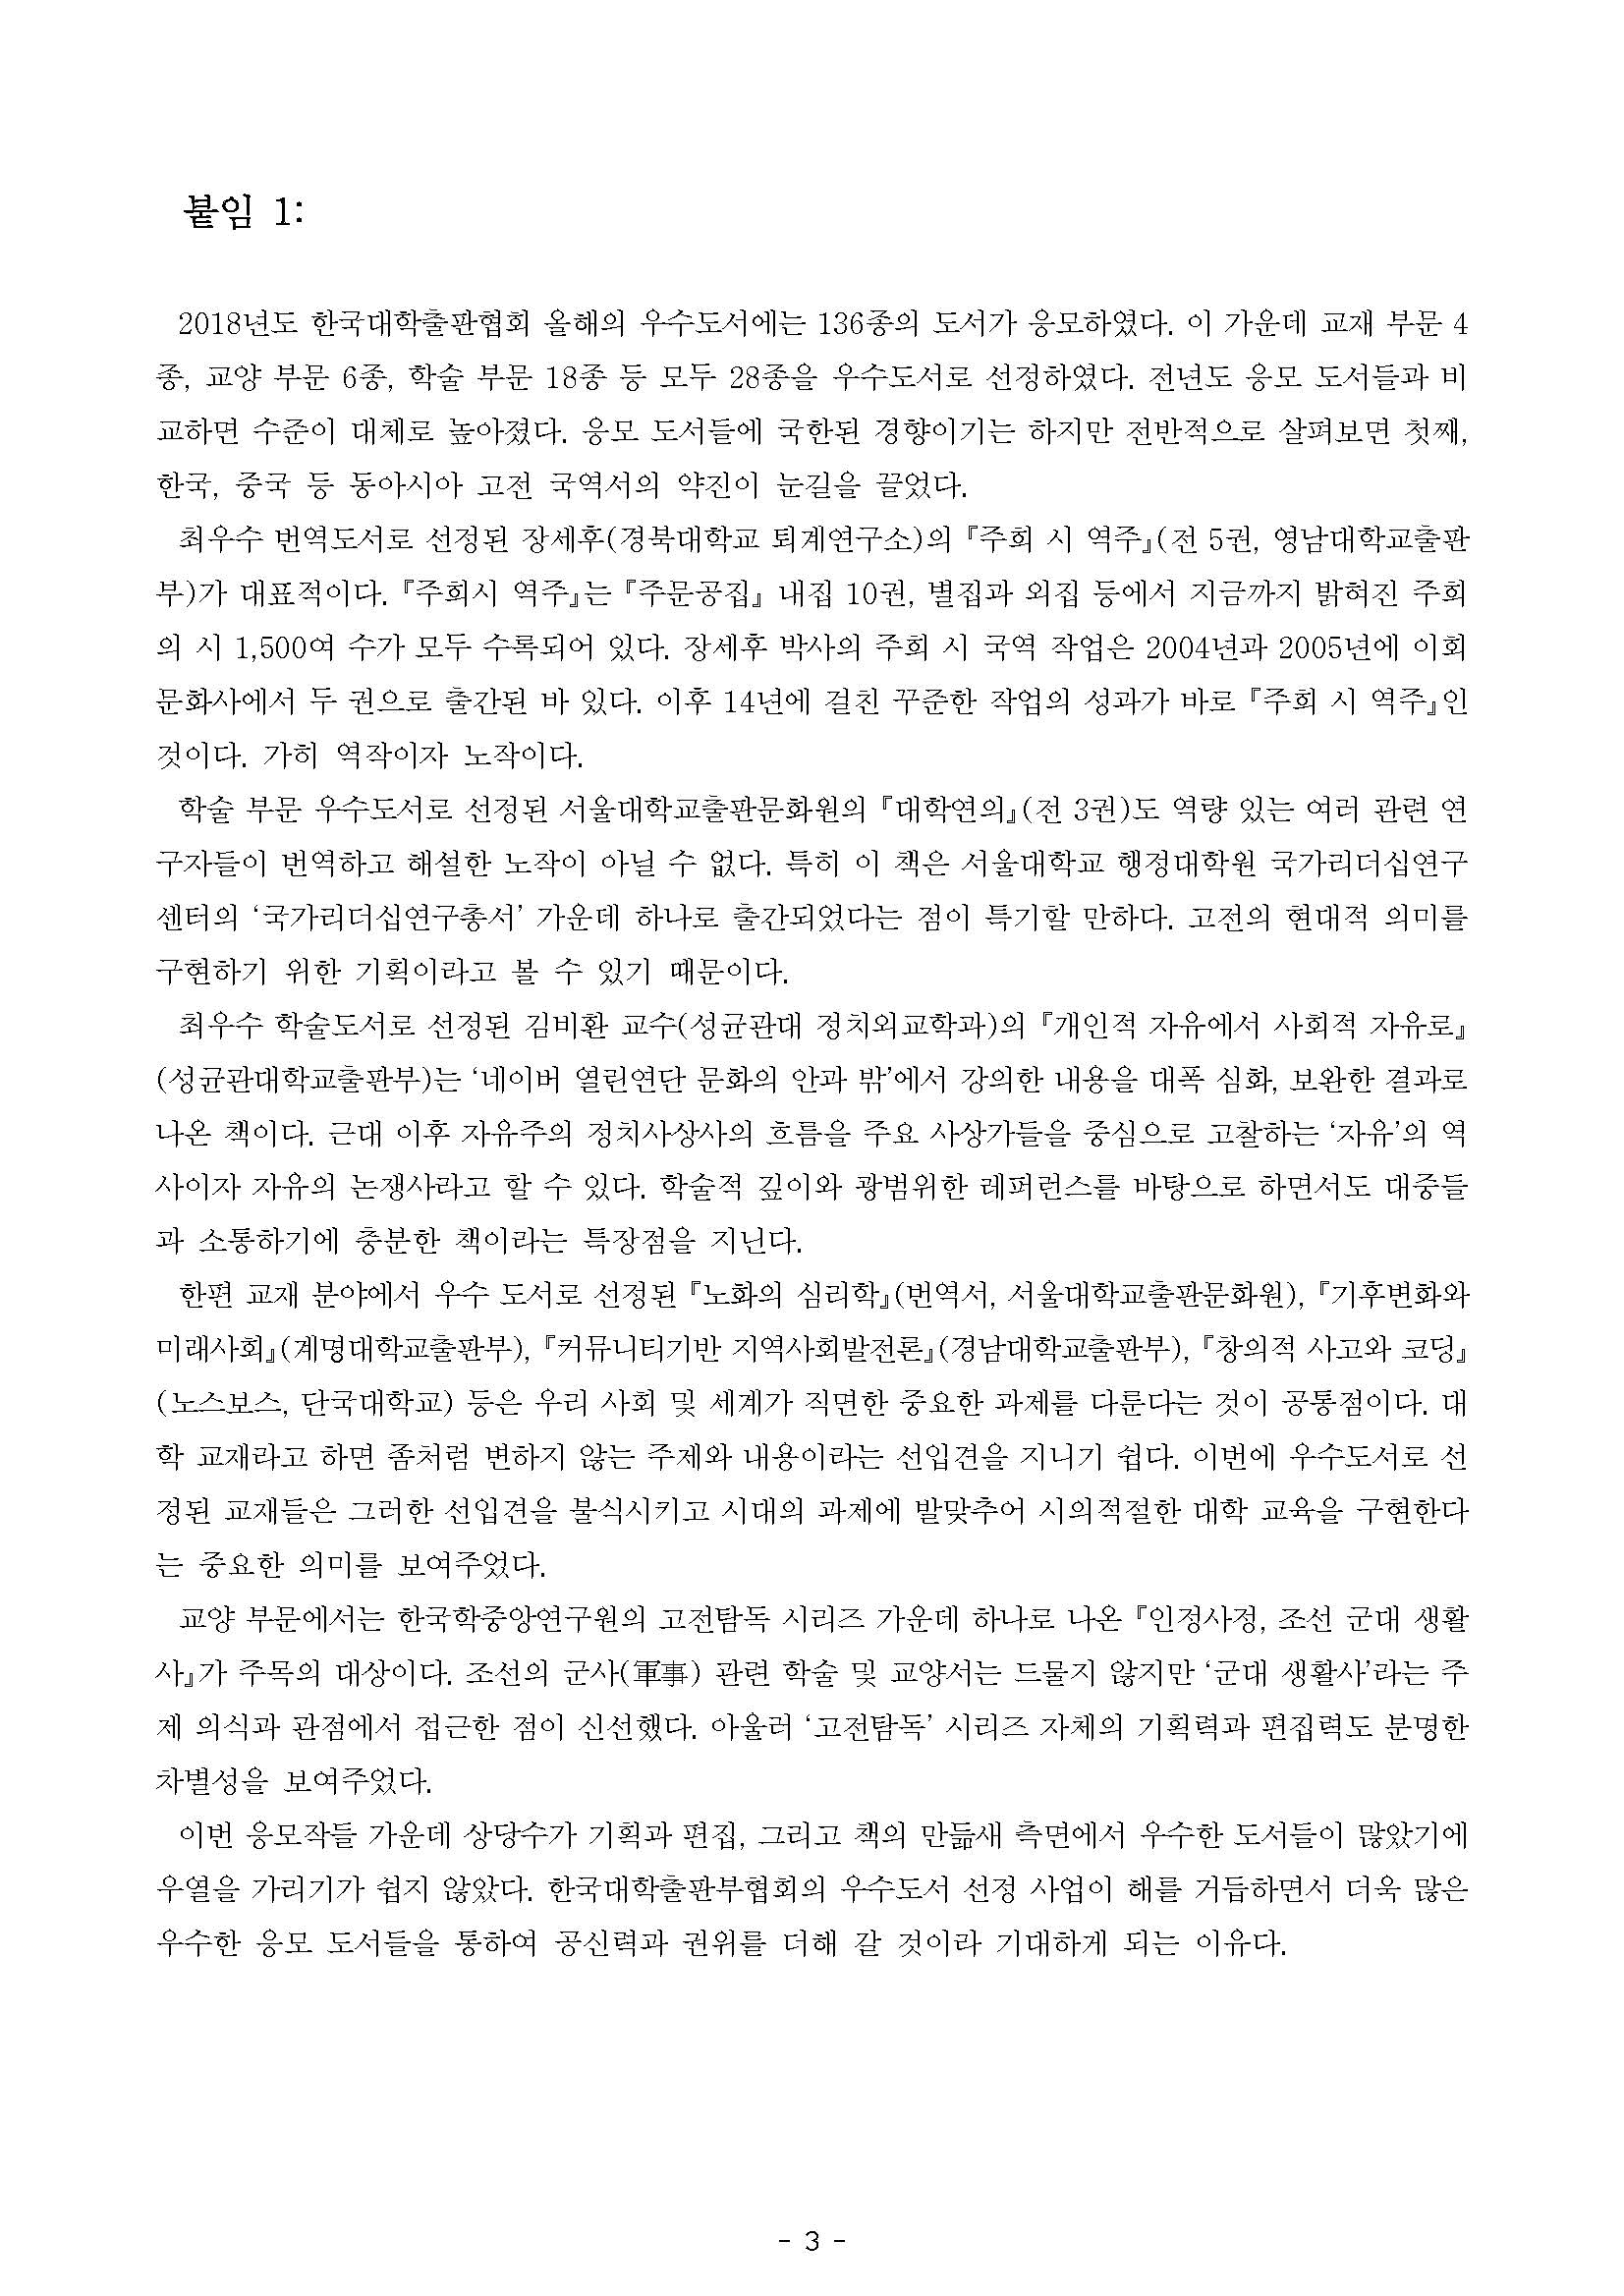 한국대학출판협회 보도자료-2018 올해의 우수도서 선정 결과-배포본_페이지_3.jpg